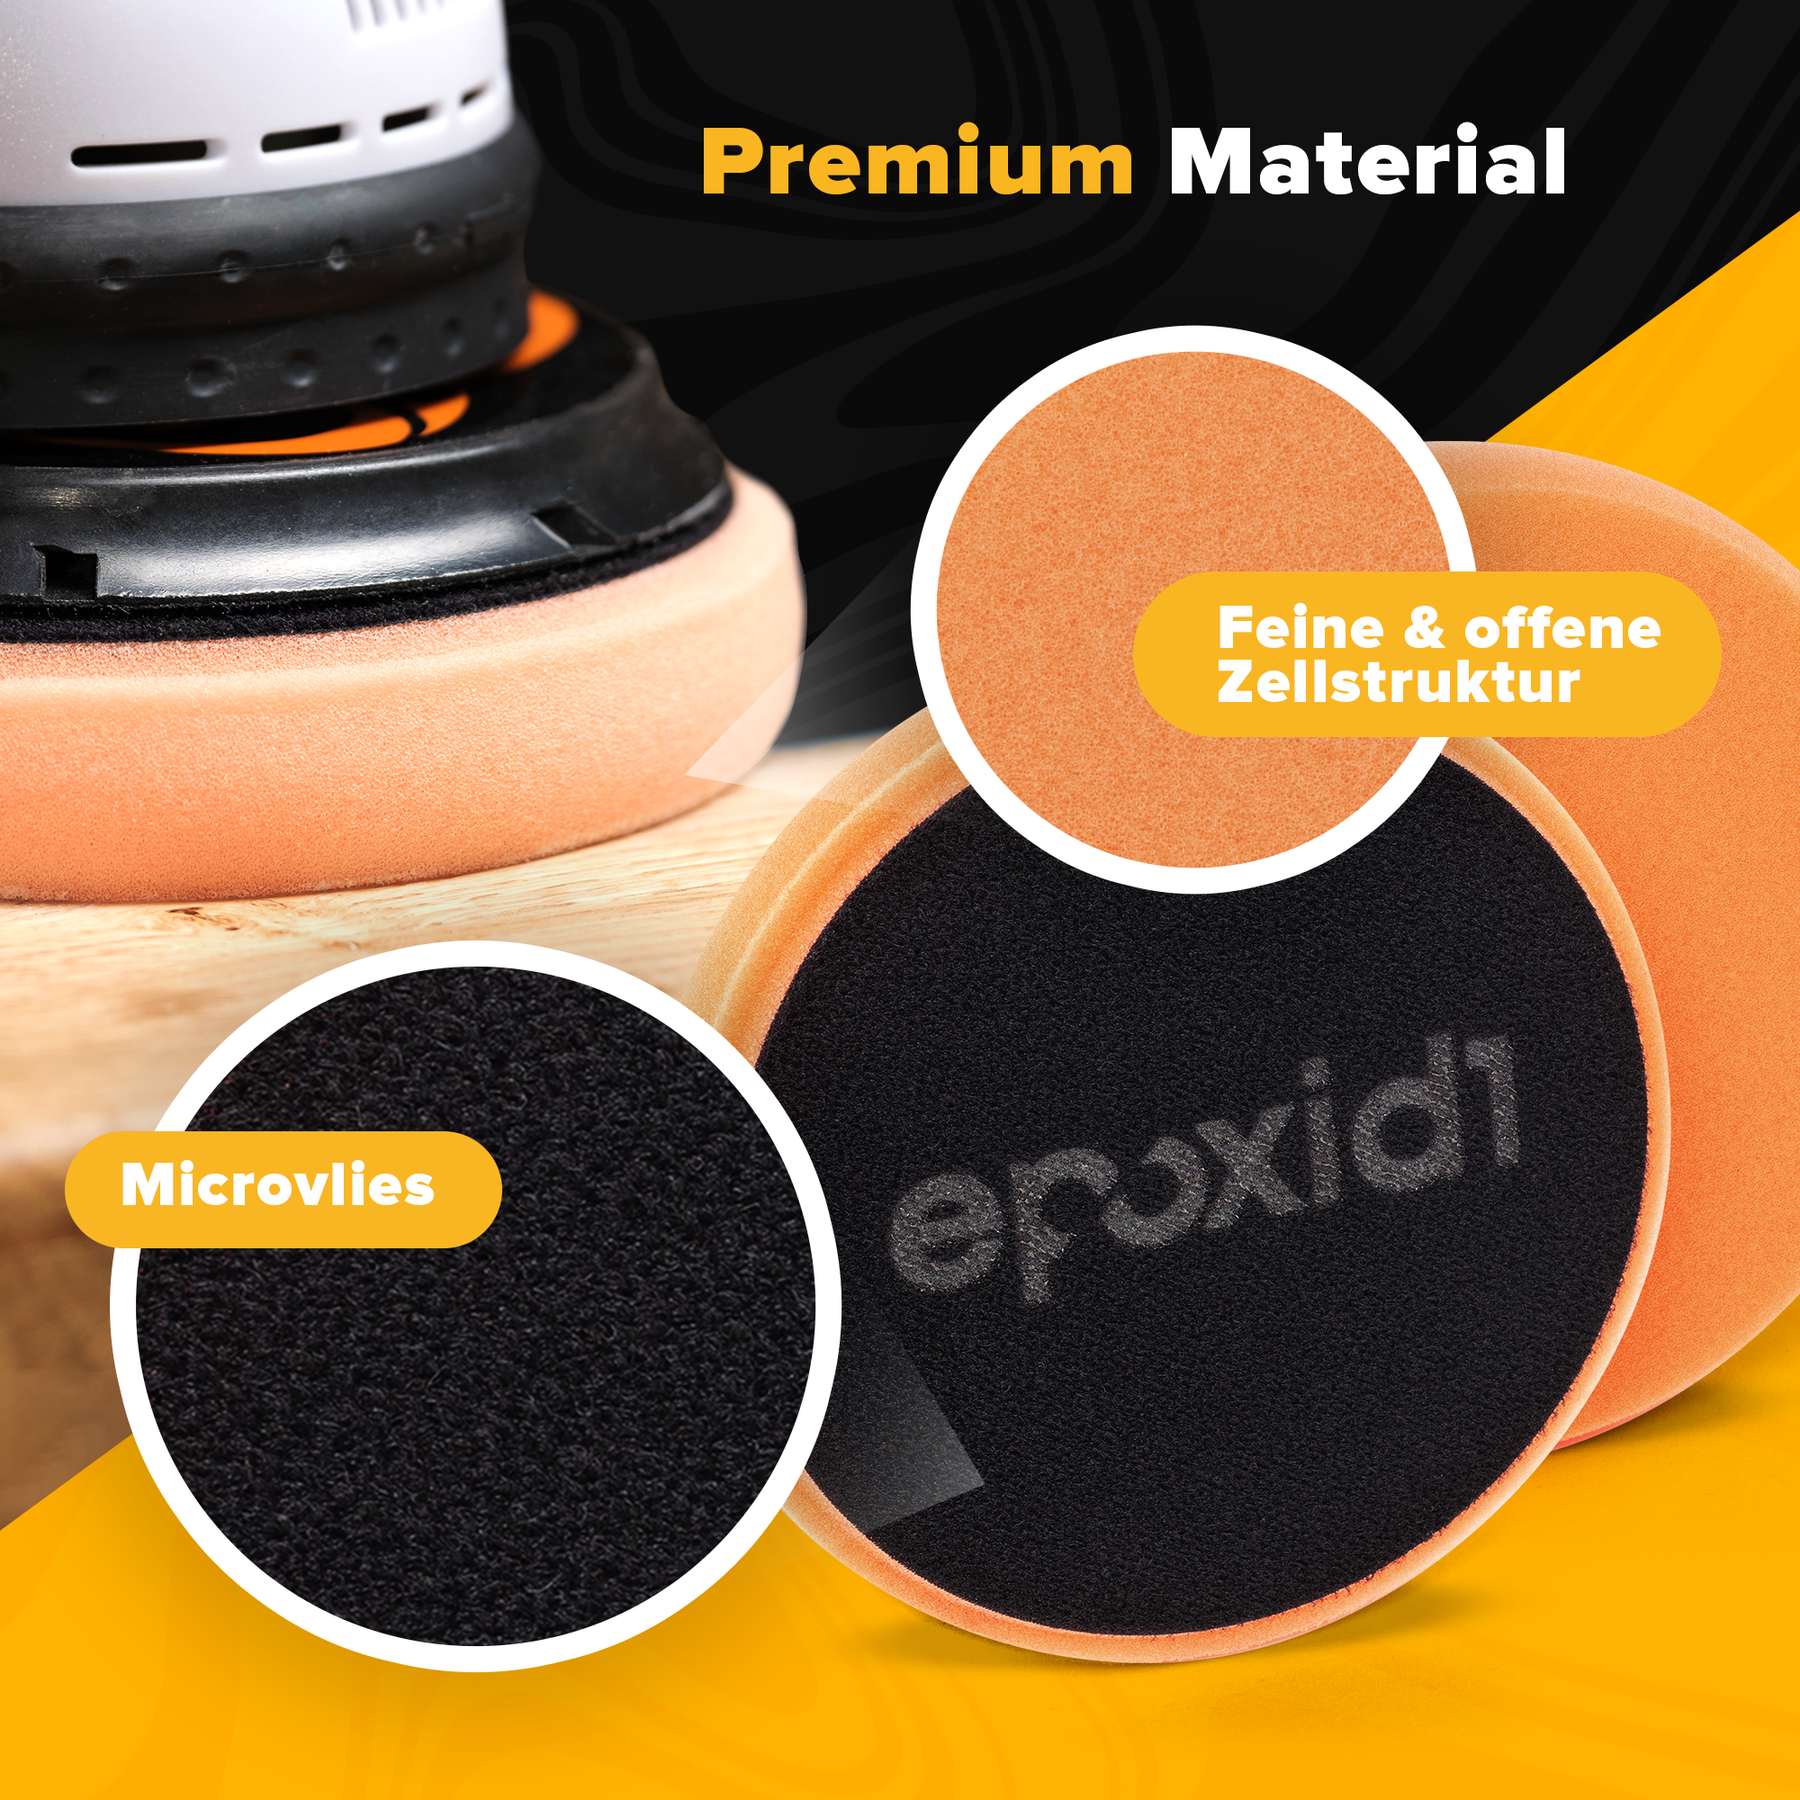 epoxid1 Polierschwamm aus premium Material